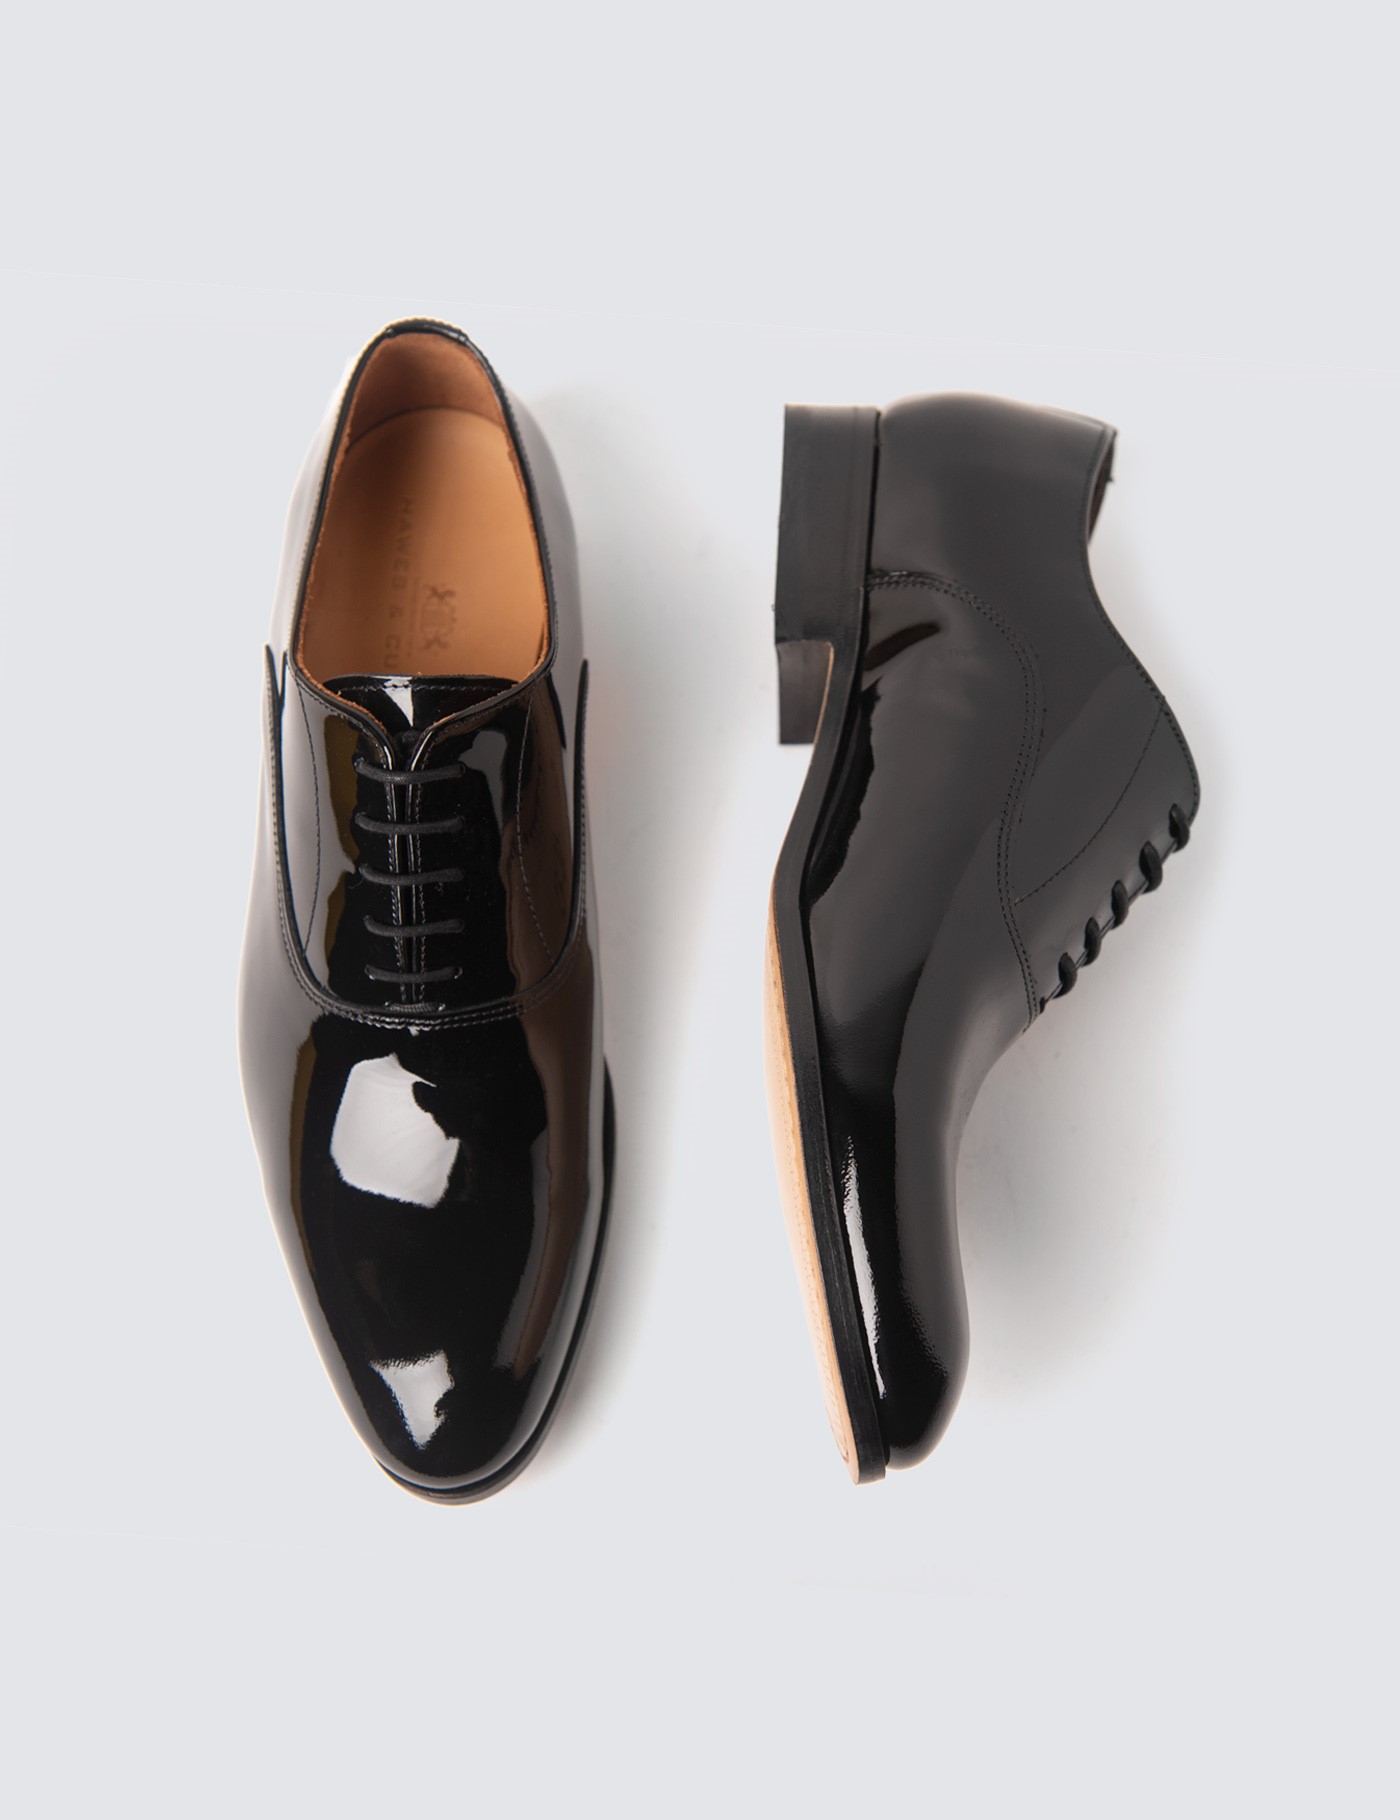 Okkernoot Acquiesce zwaartekracht Men's Black Patent Lace Up Dress Shoe | Hawes & Curtis